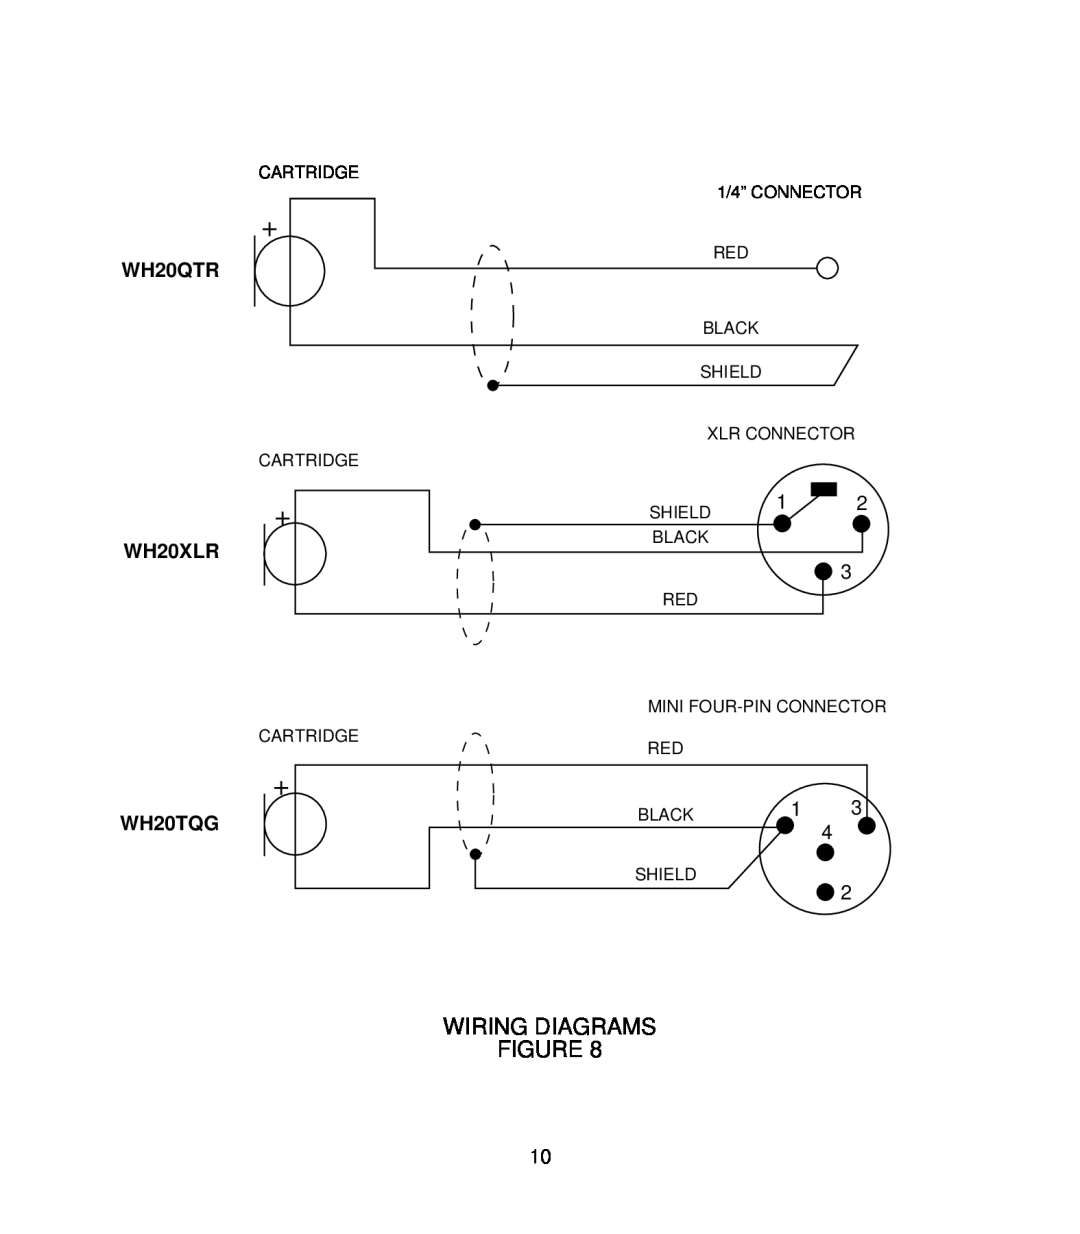 Shure manual Wiring Diagrams, WH20QTR, WH20XLR, WH20TQG 